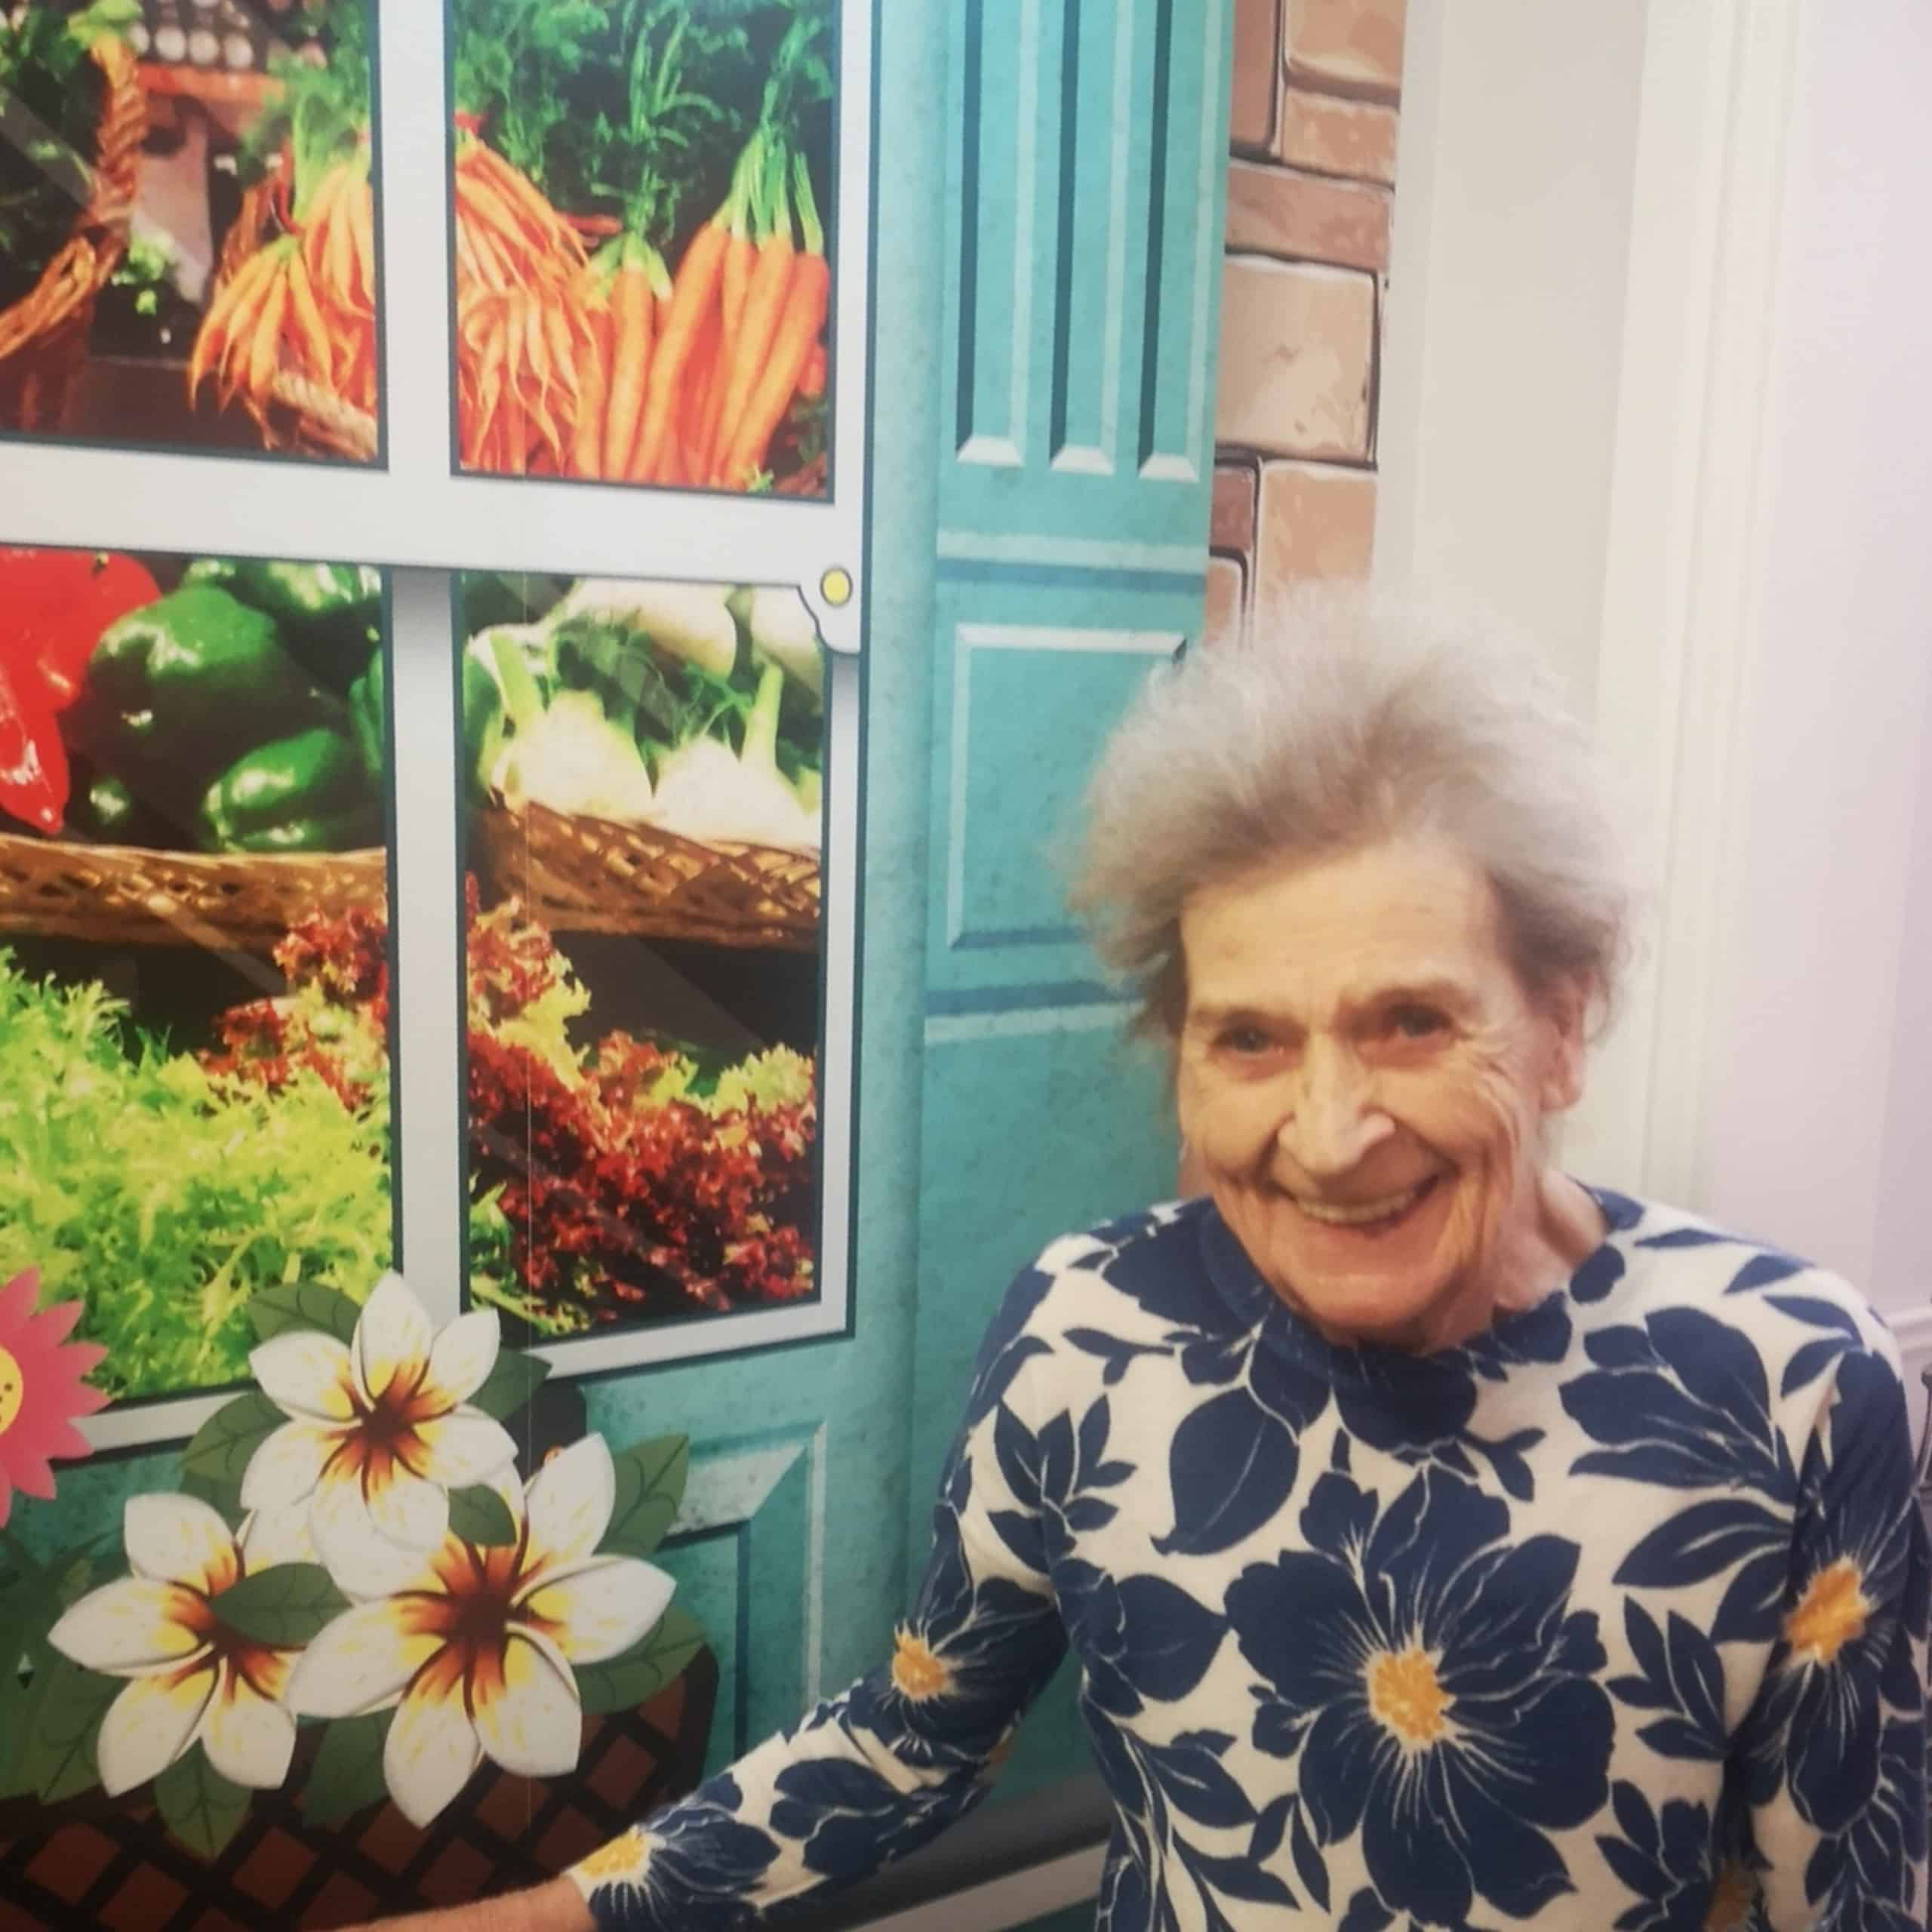 Resident Moira Buchanan enjoying the grocery store mural at Avonbridge Care Home in Hamilton.